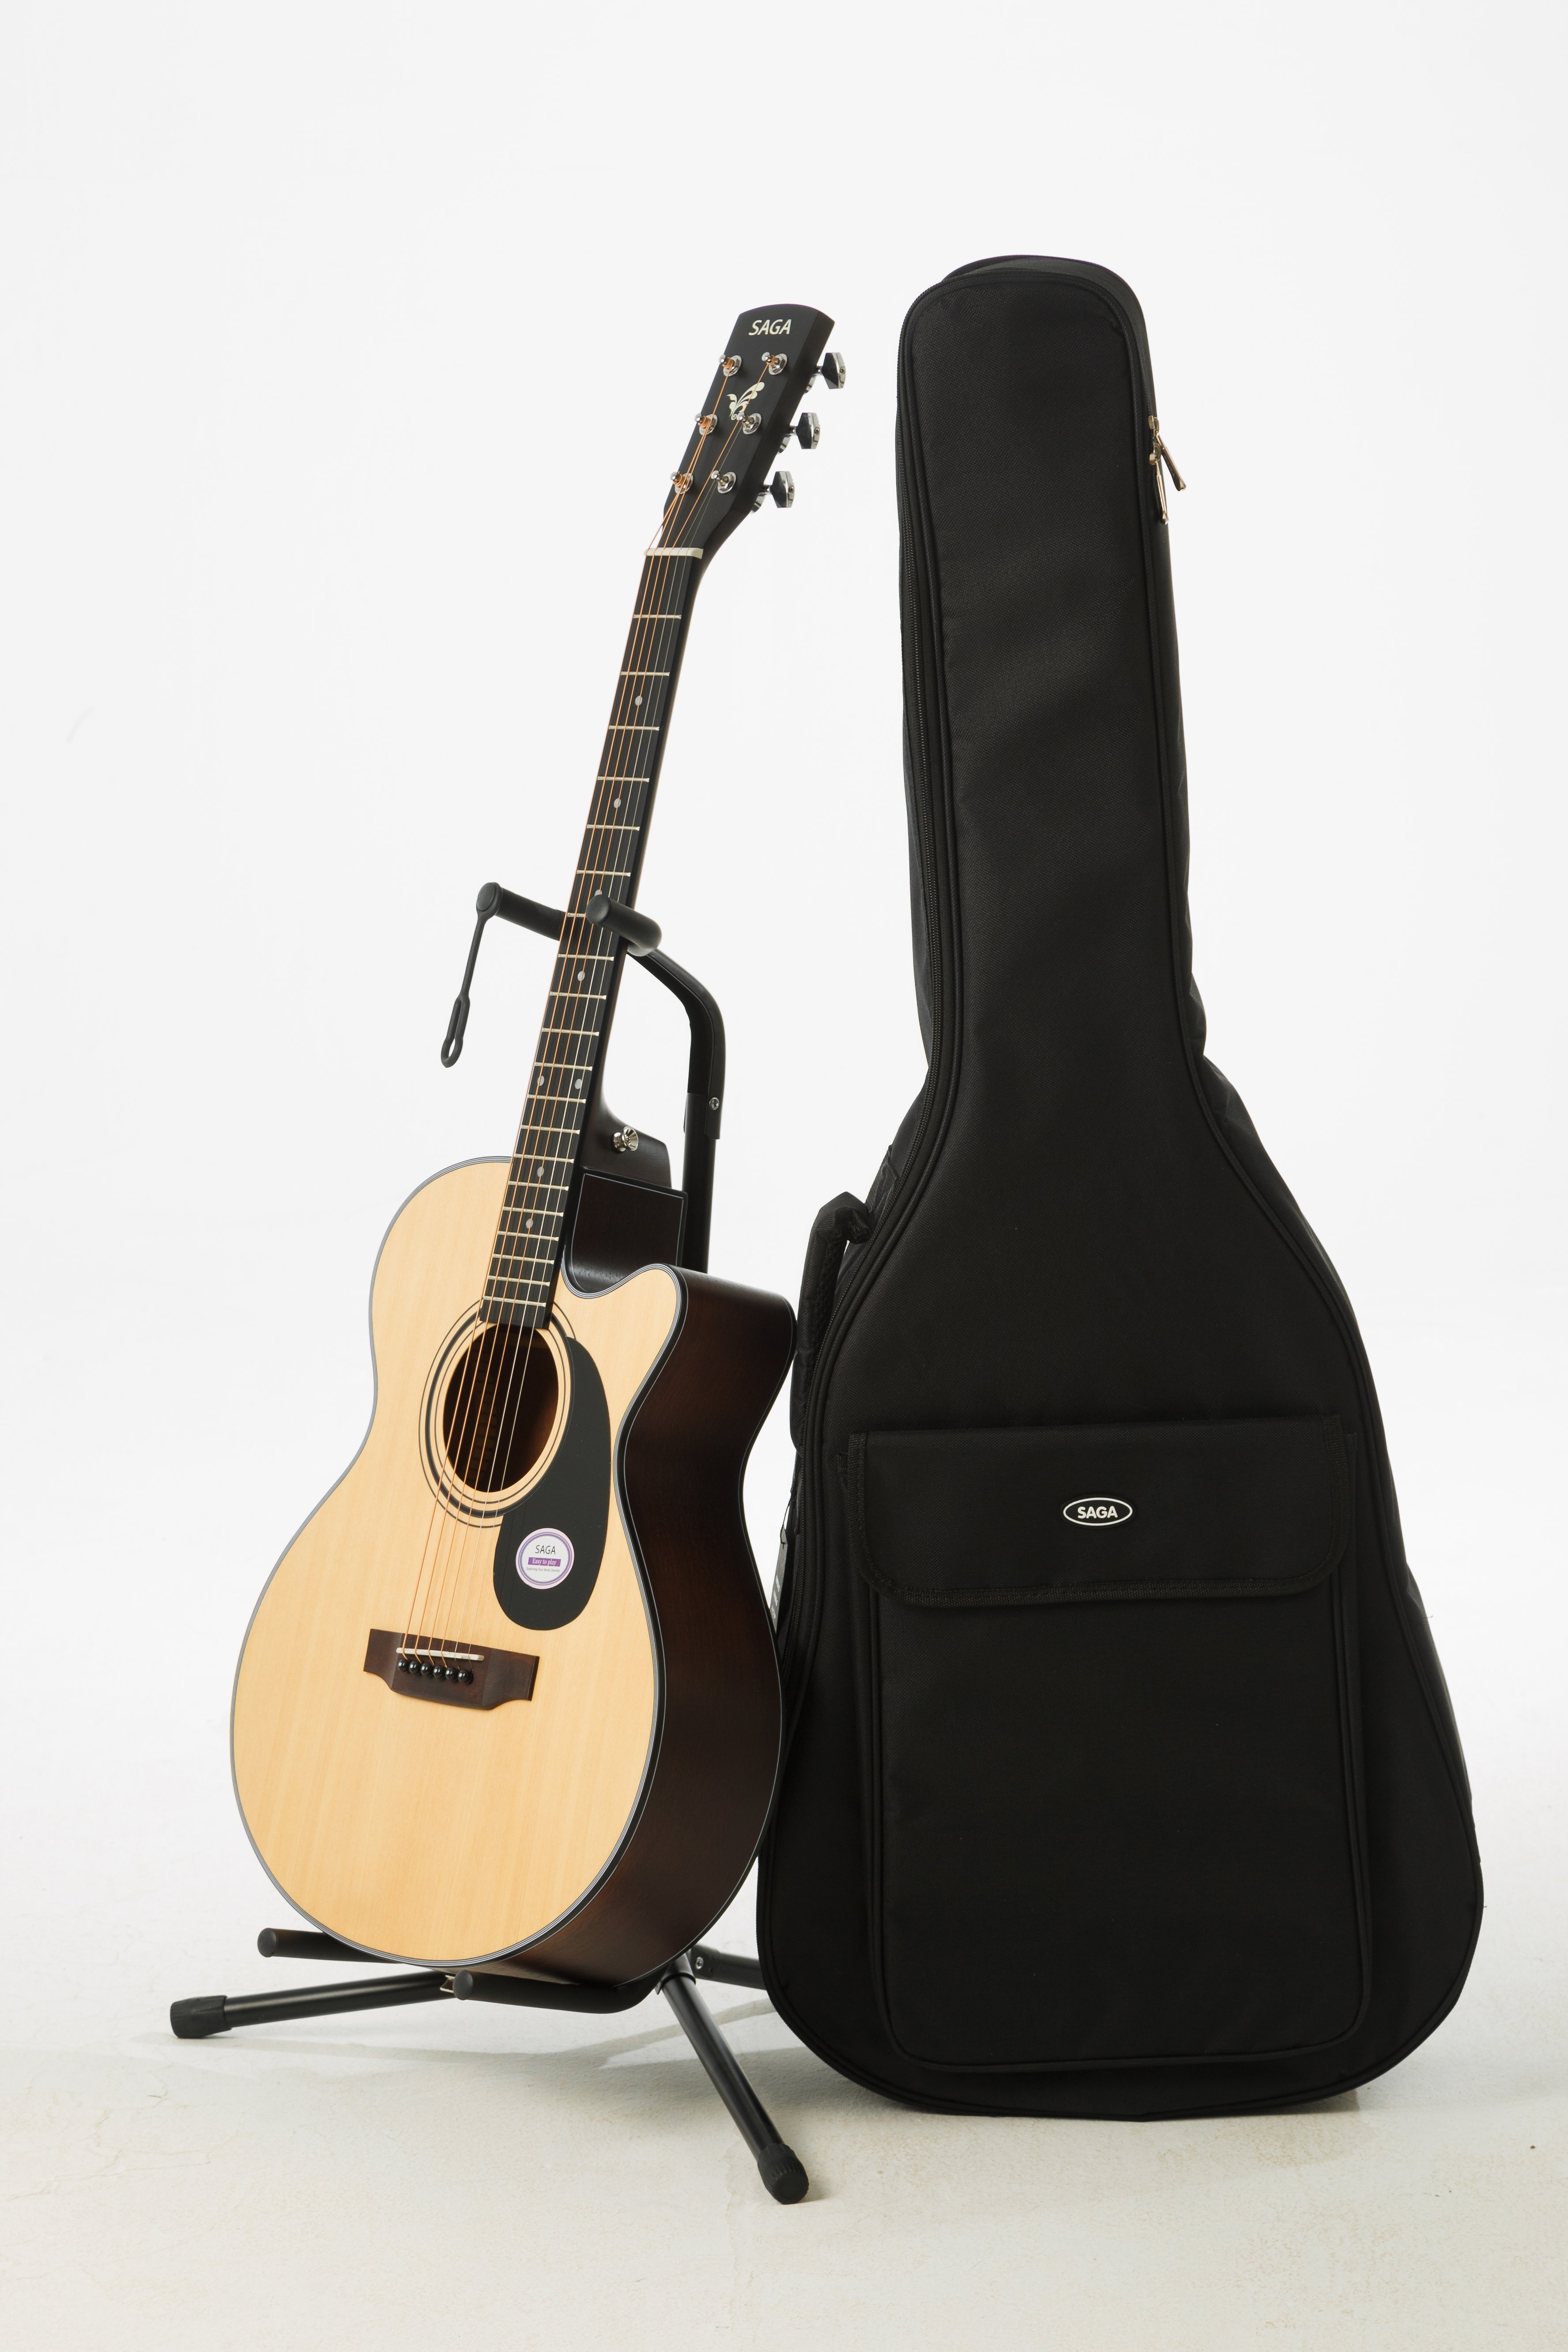 SAGA SA600C With Bag - Акустическая гитара, корпус гранд аудиториум, с вырезом, цвет натуральный, в чехле